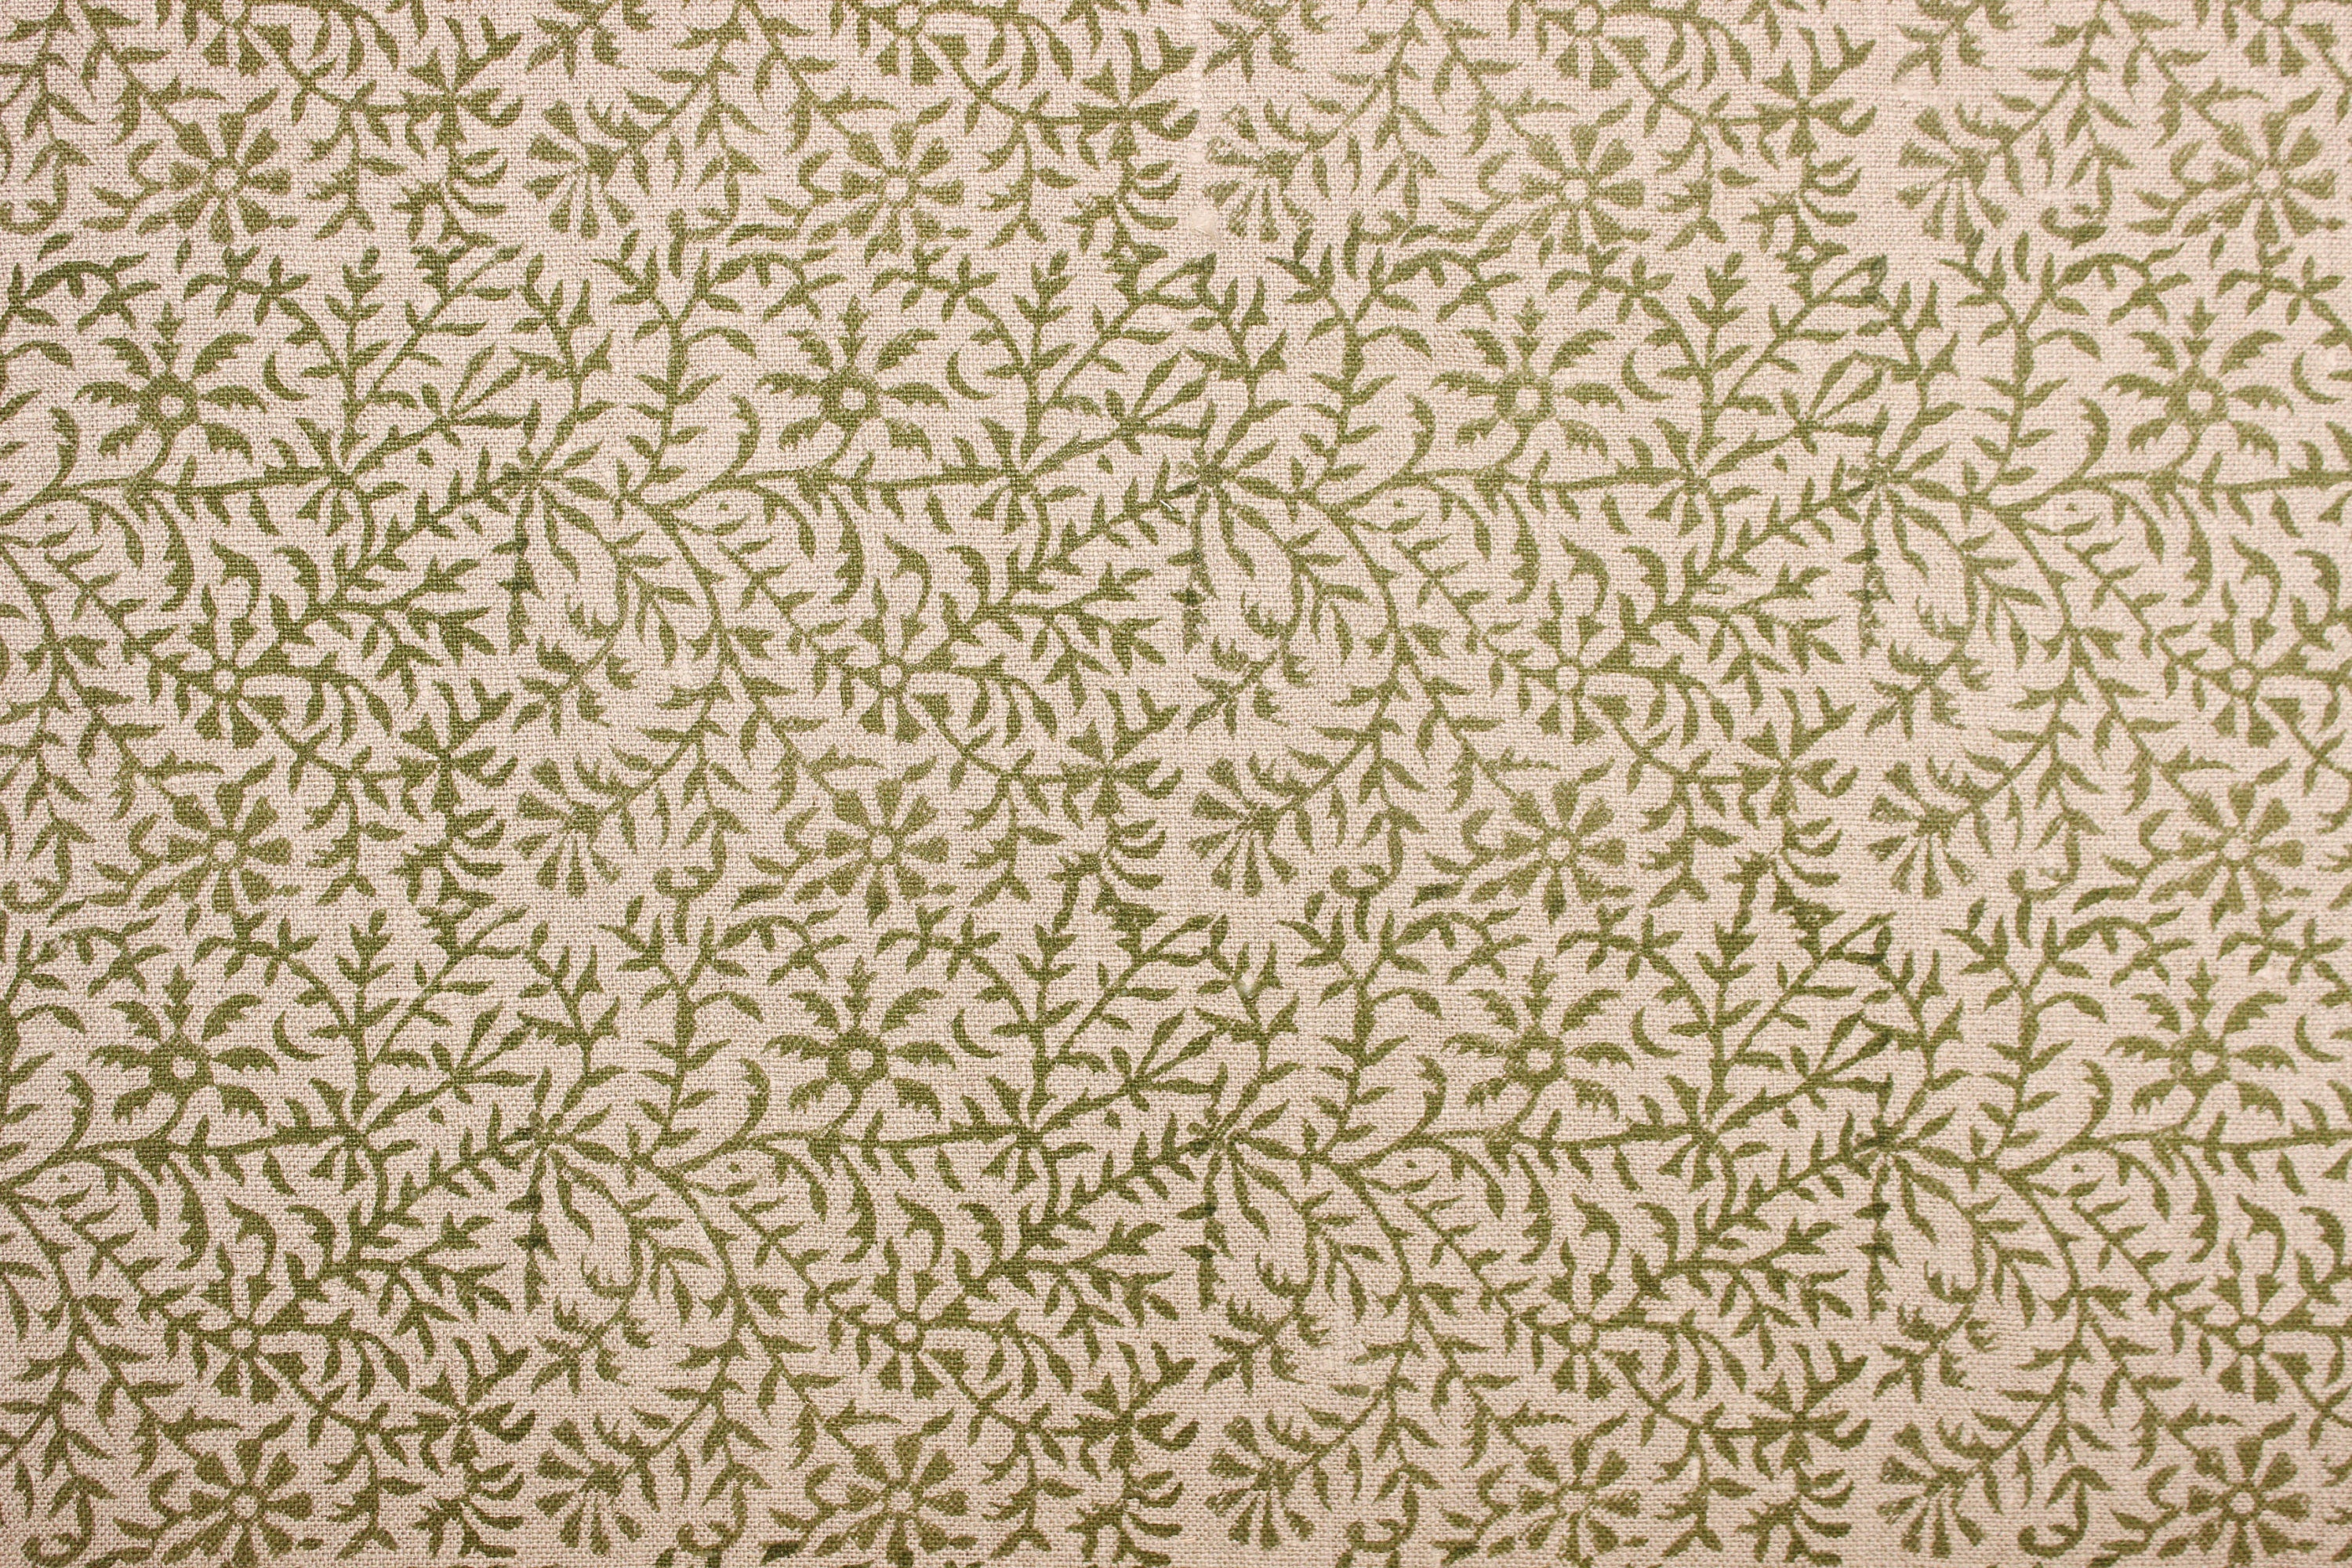 Junglee Ghass Linen  Olive Green Indian Hand Block Printed Fabric, Linen Block Print Pillow Cover